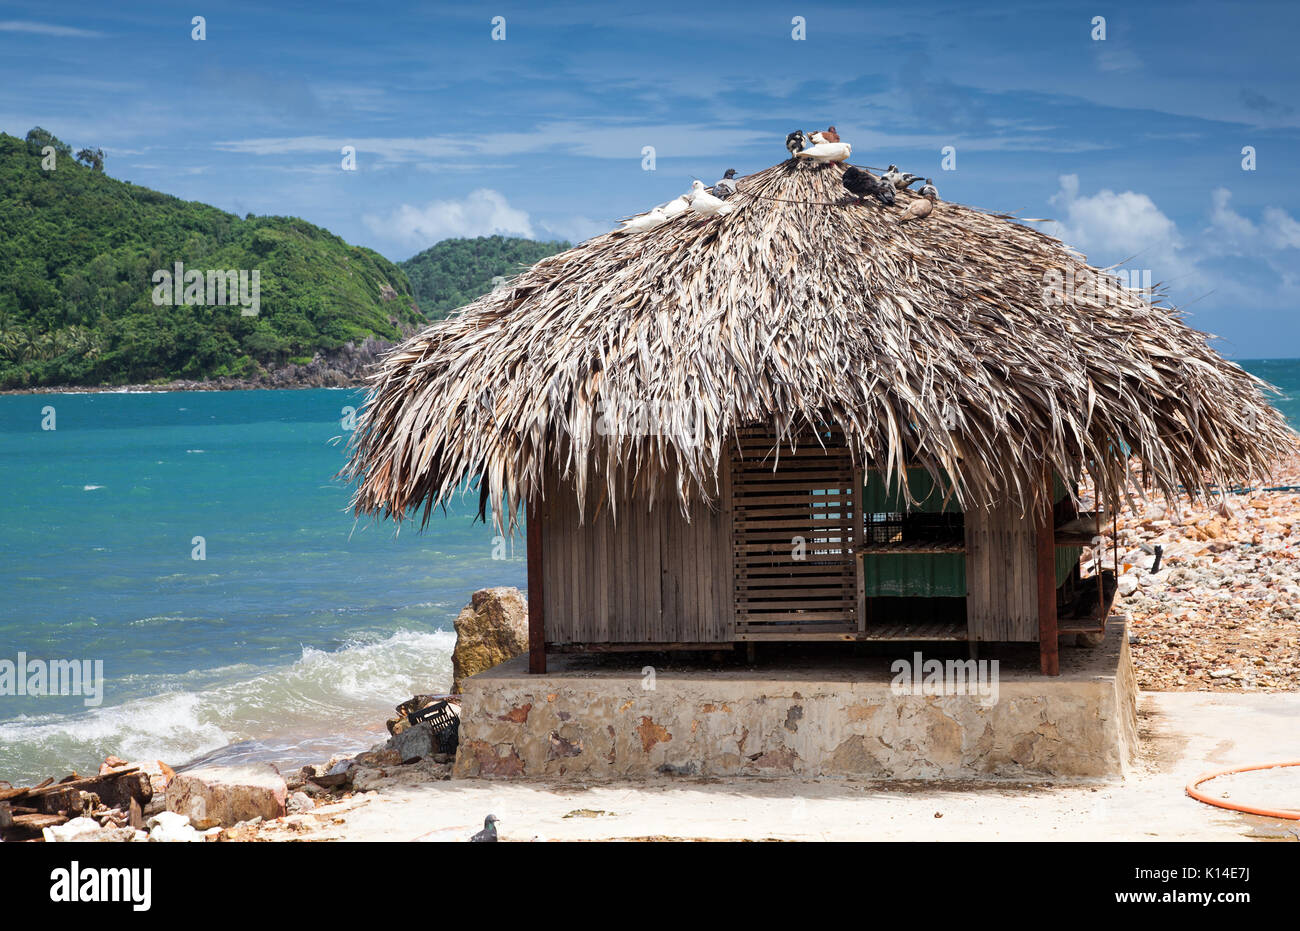 Cabaña en la playa en isla tropical Foto de stock